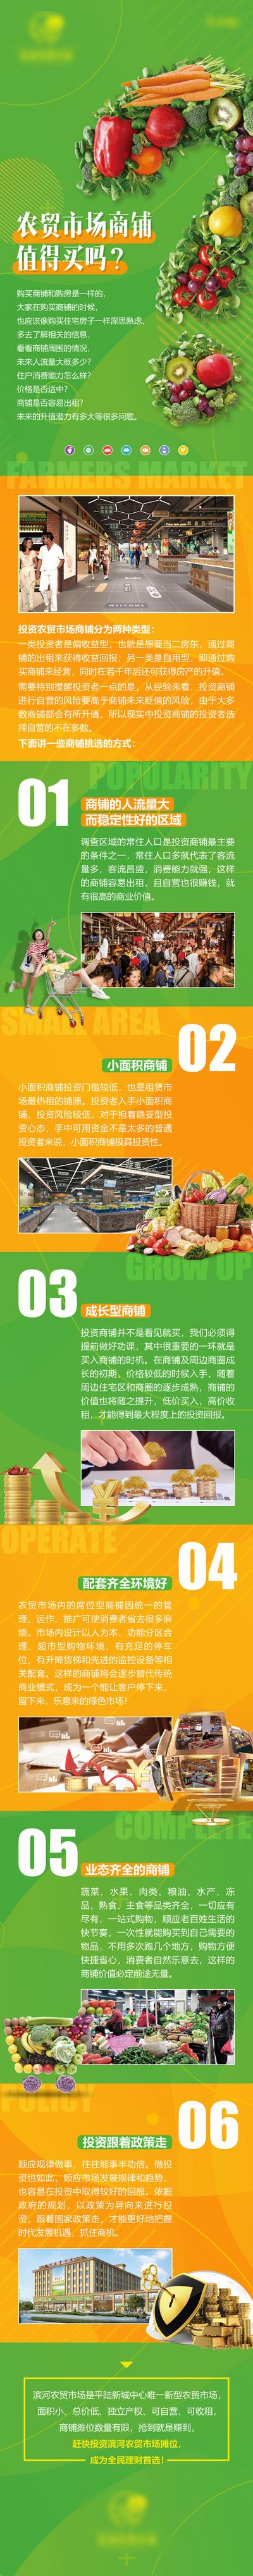 南门网 专题设计 长图 房地产 农贸市场 蔬菜 投资 升值 业态 配套 新农超 商铺 商业 绿色